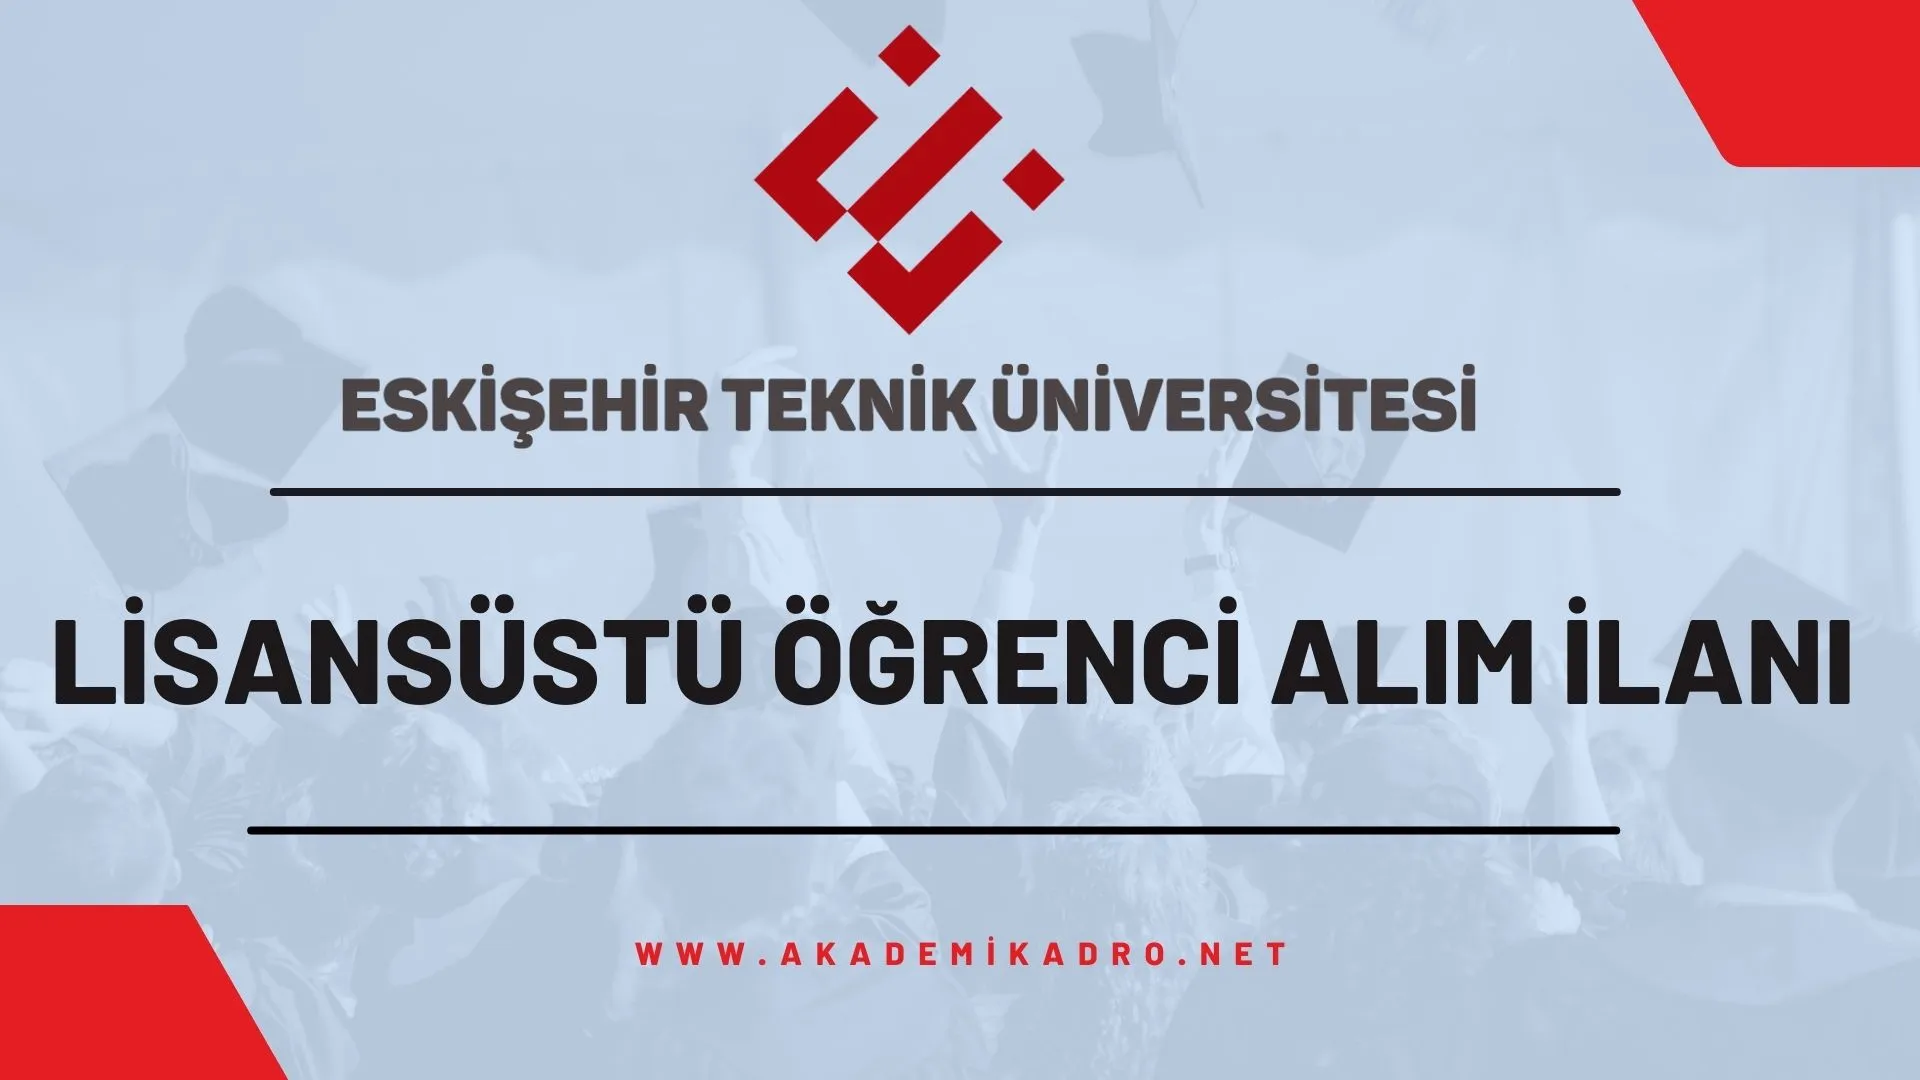 Eskişehir Teknik Üniversitesi 2023-2024 Güz döneminde lisansüstü programlara öğrenci alacaktır.